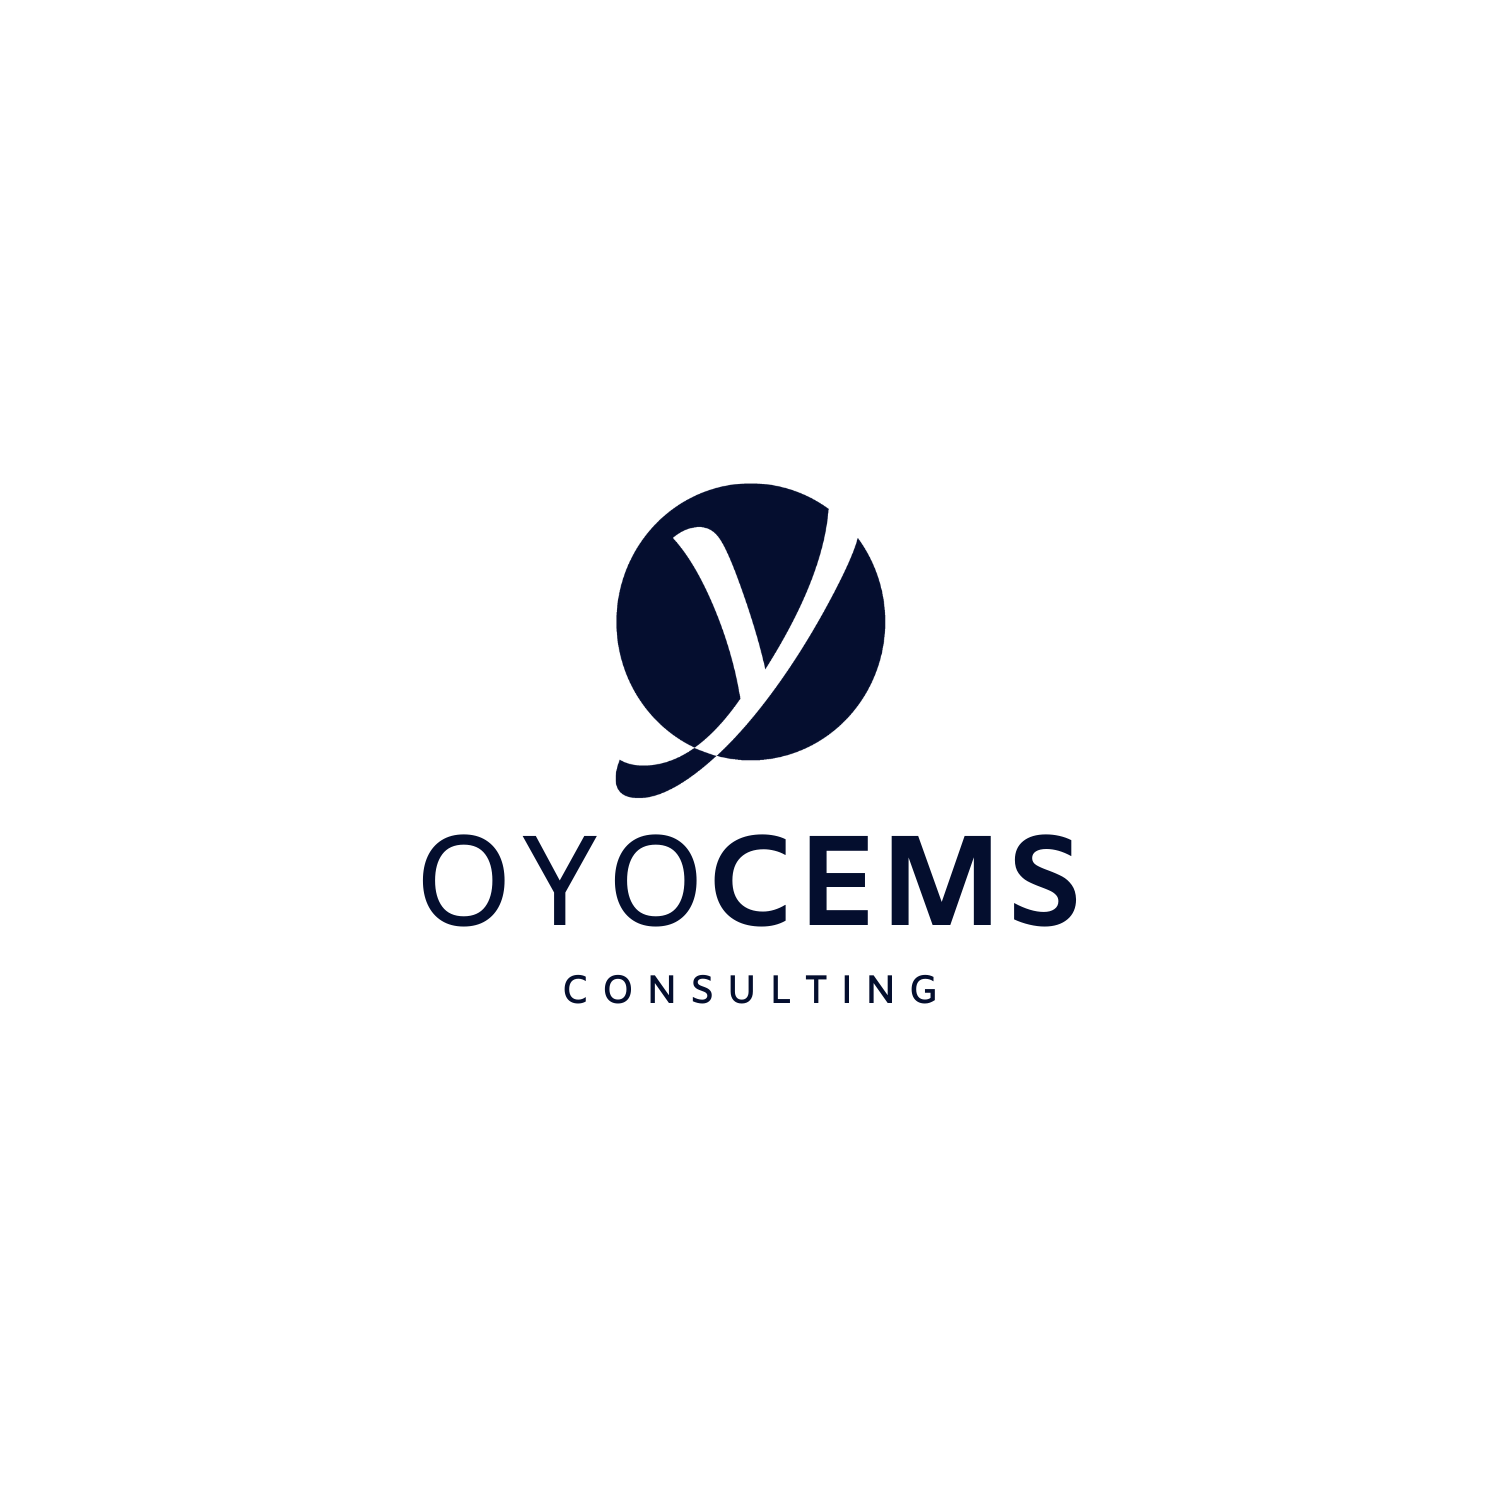 (c) Oyocems.com